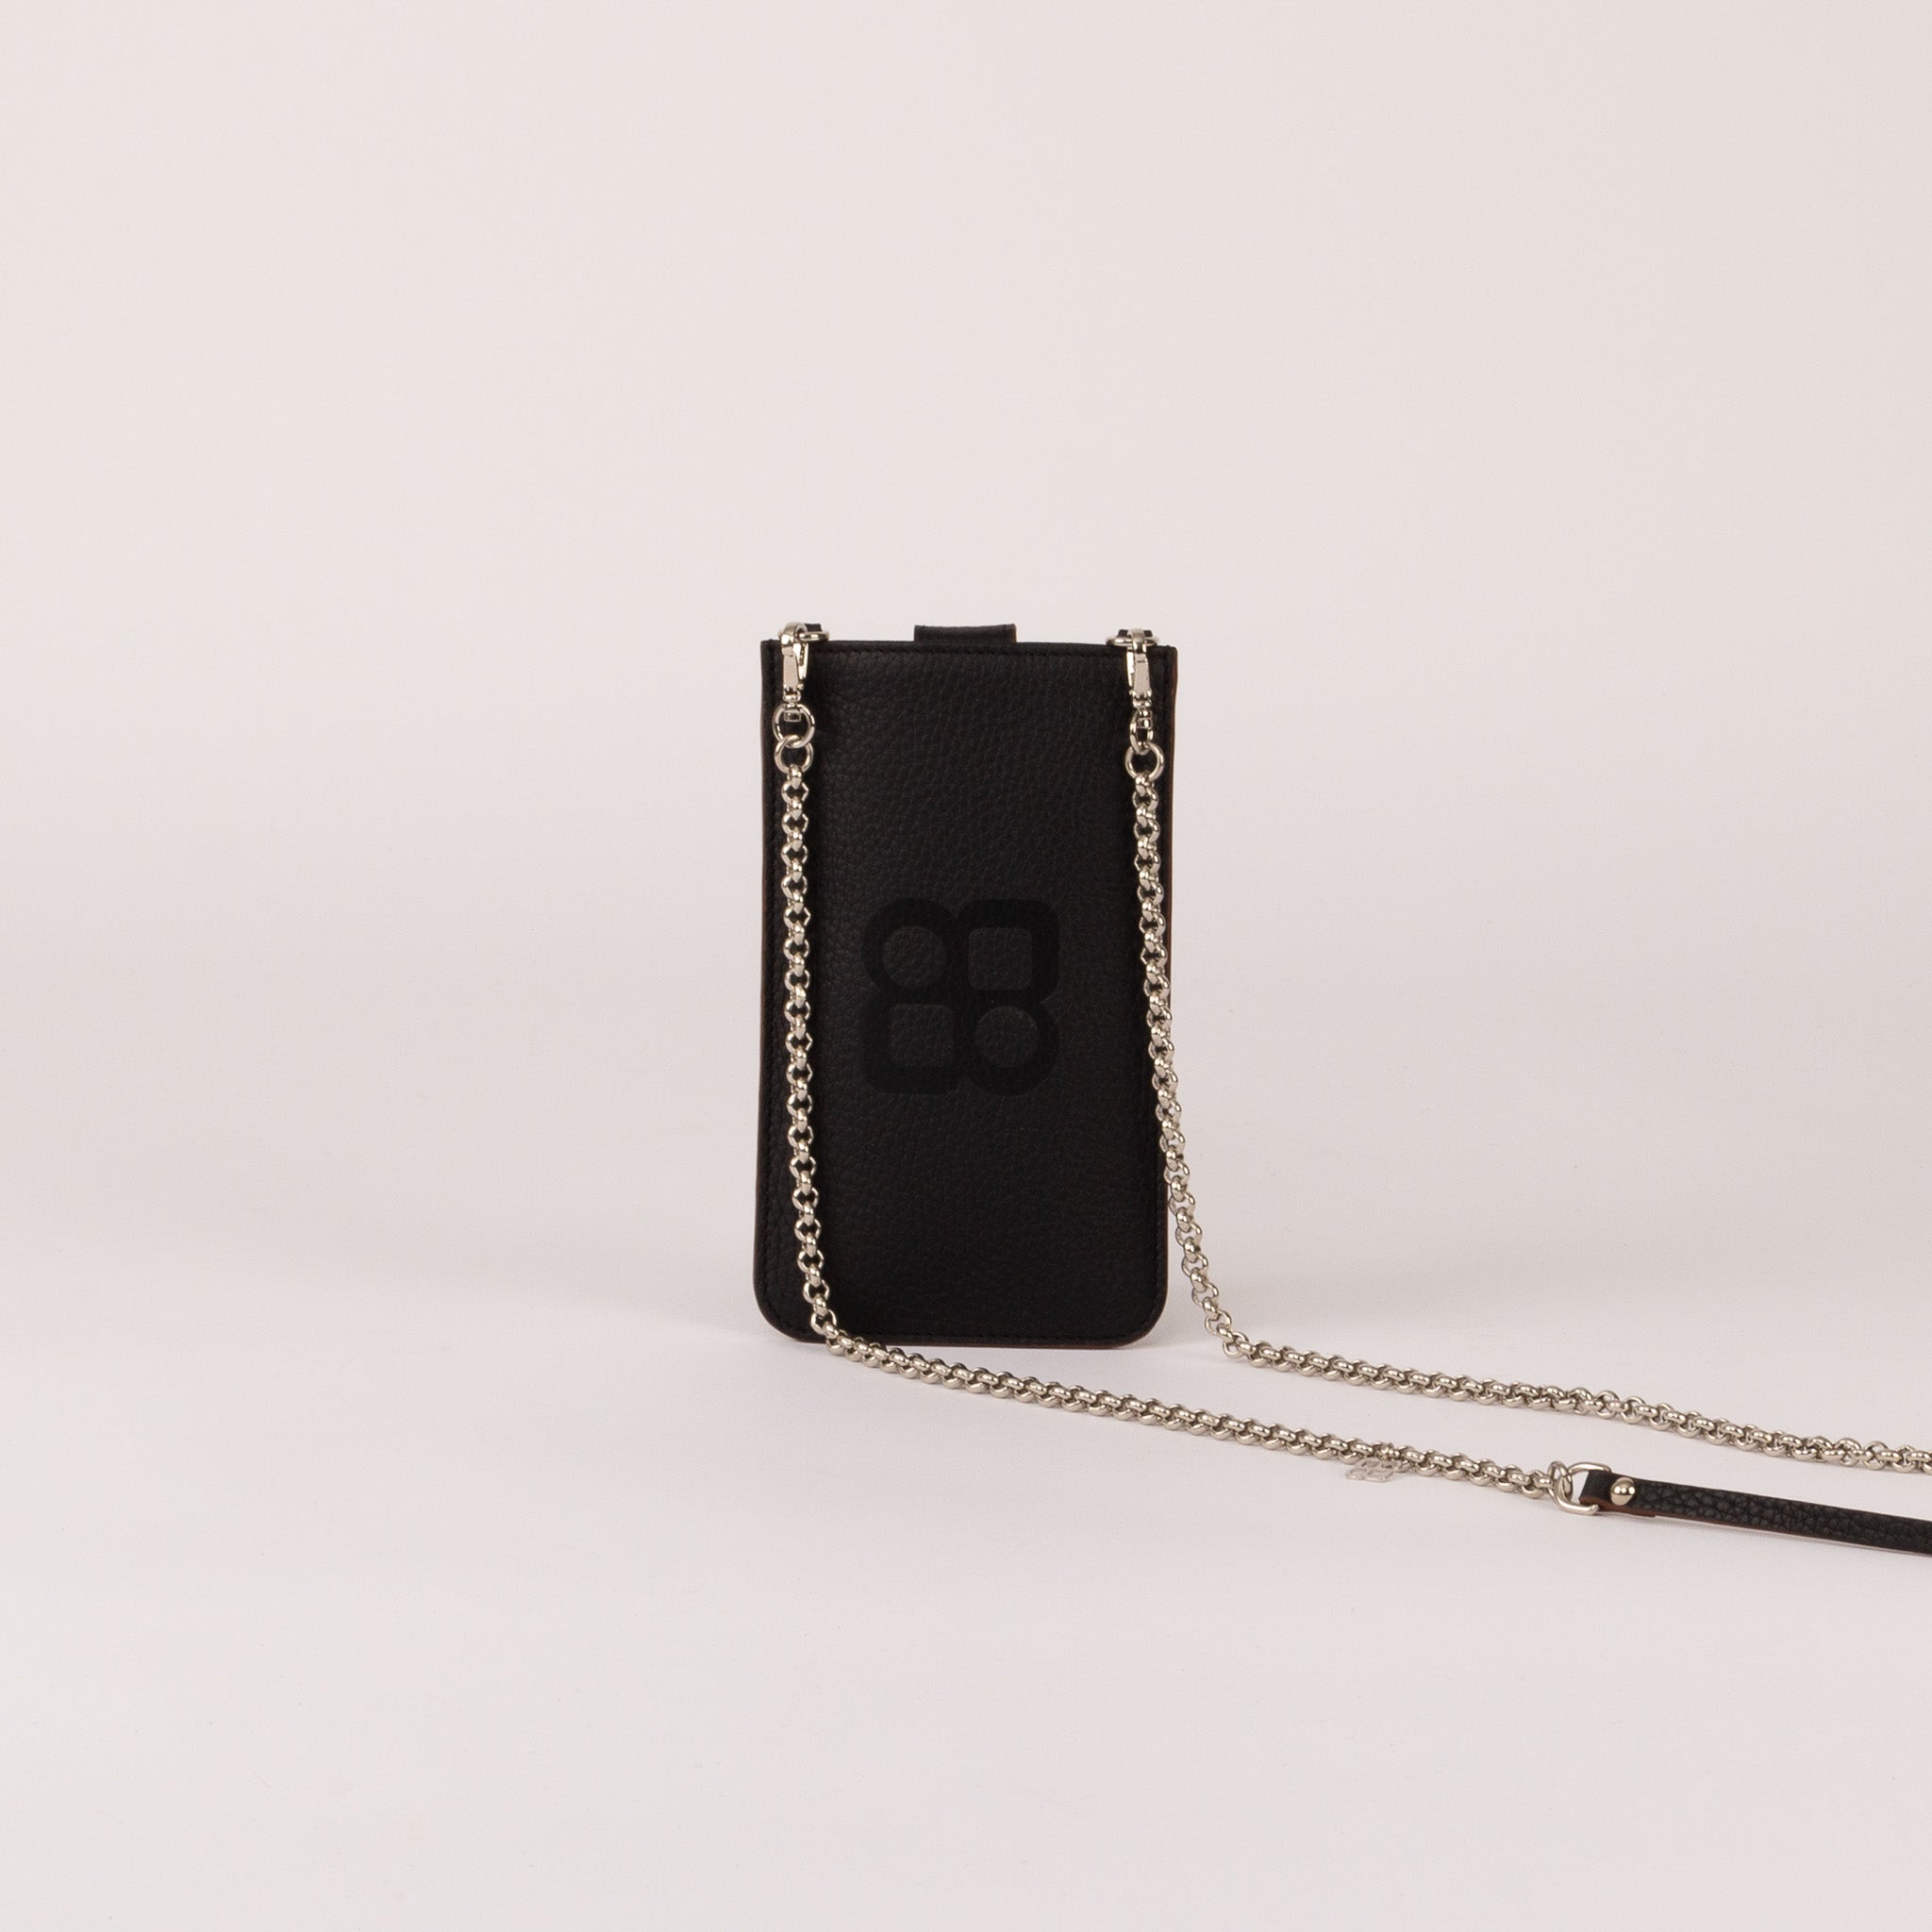 Phone Pocket - Shoulder Chain